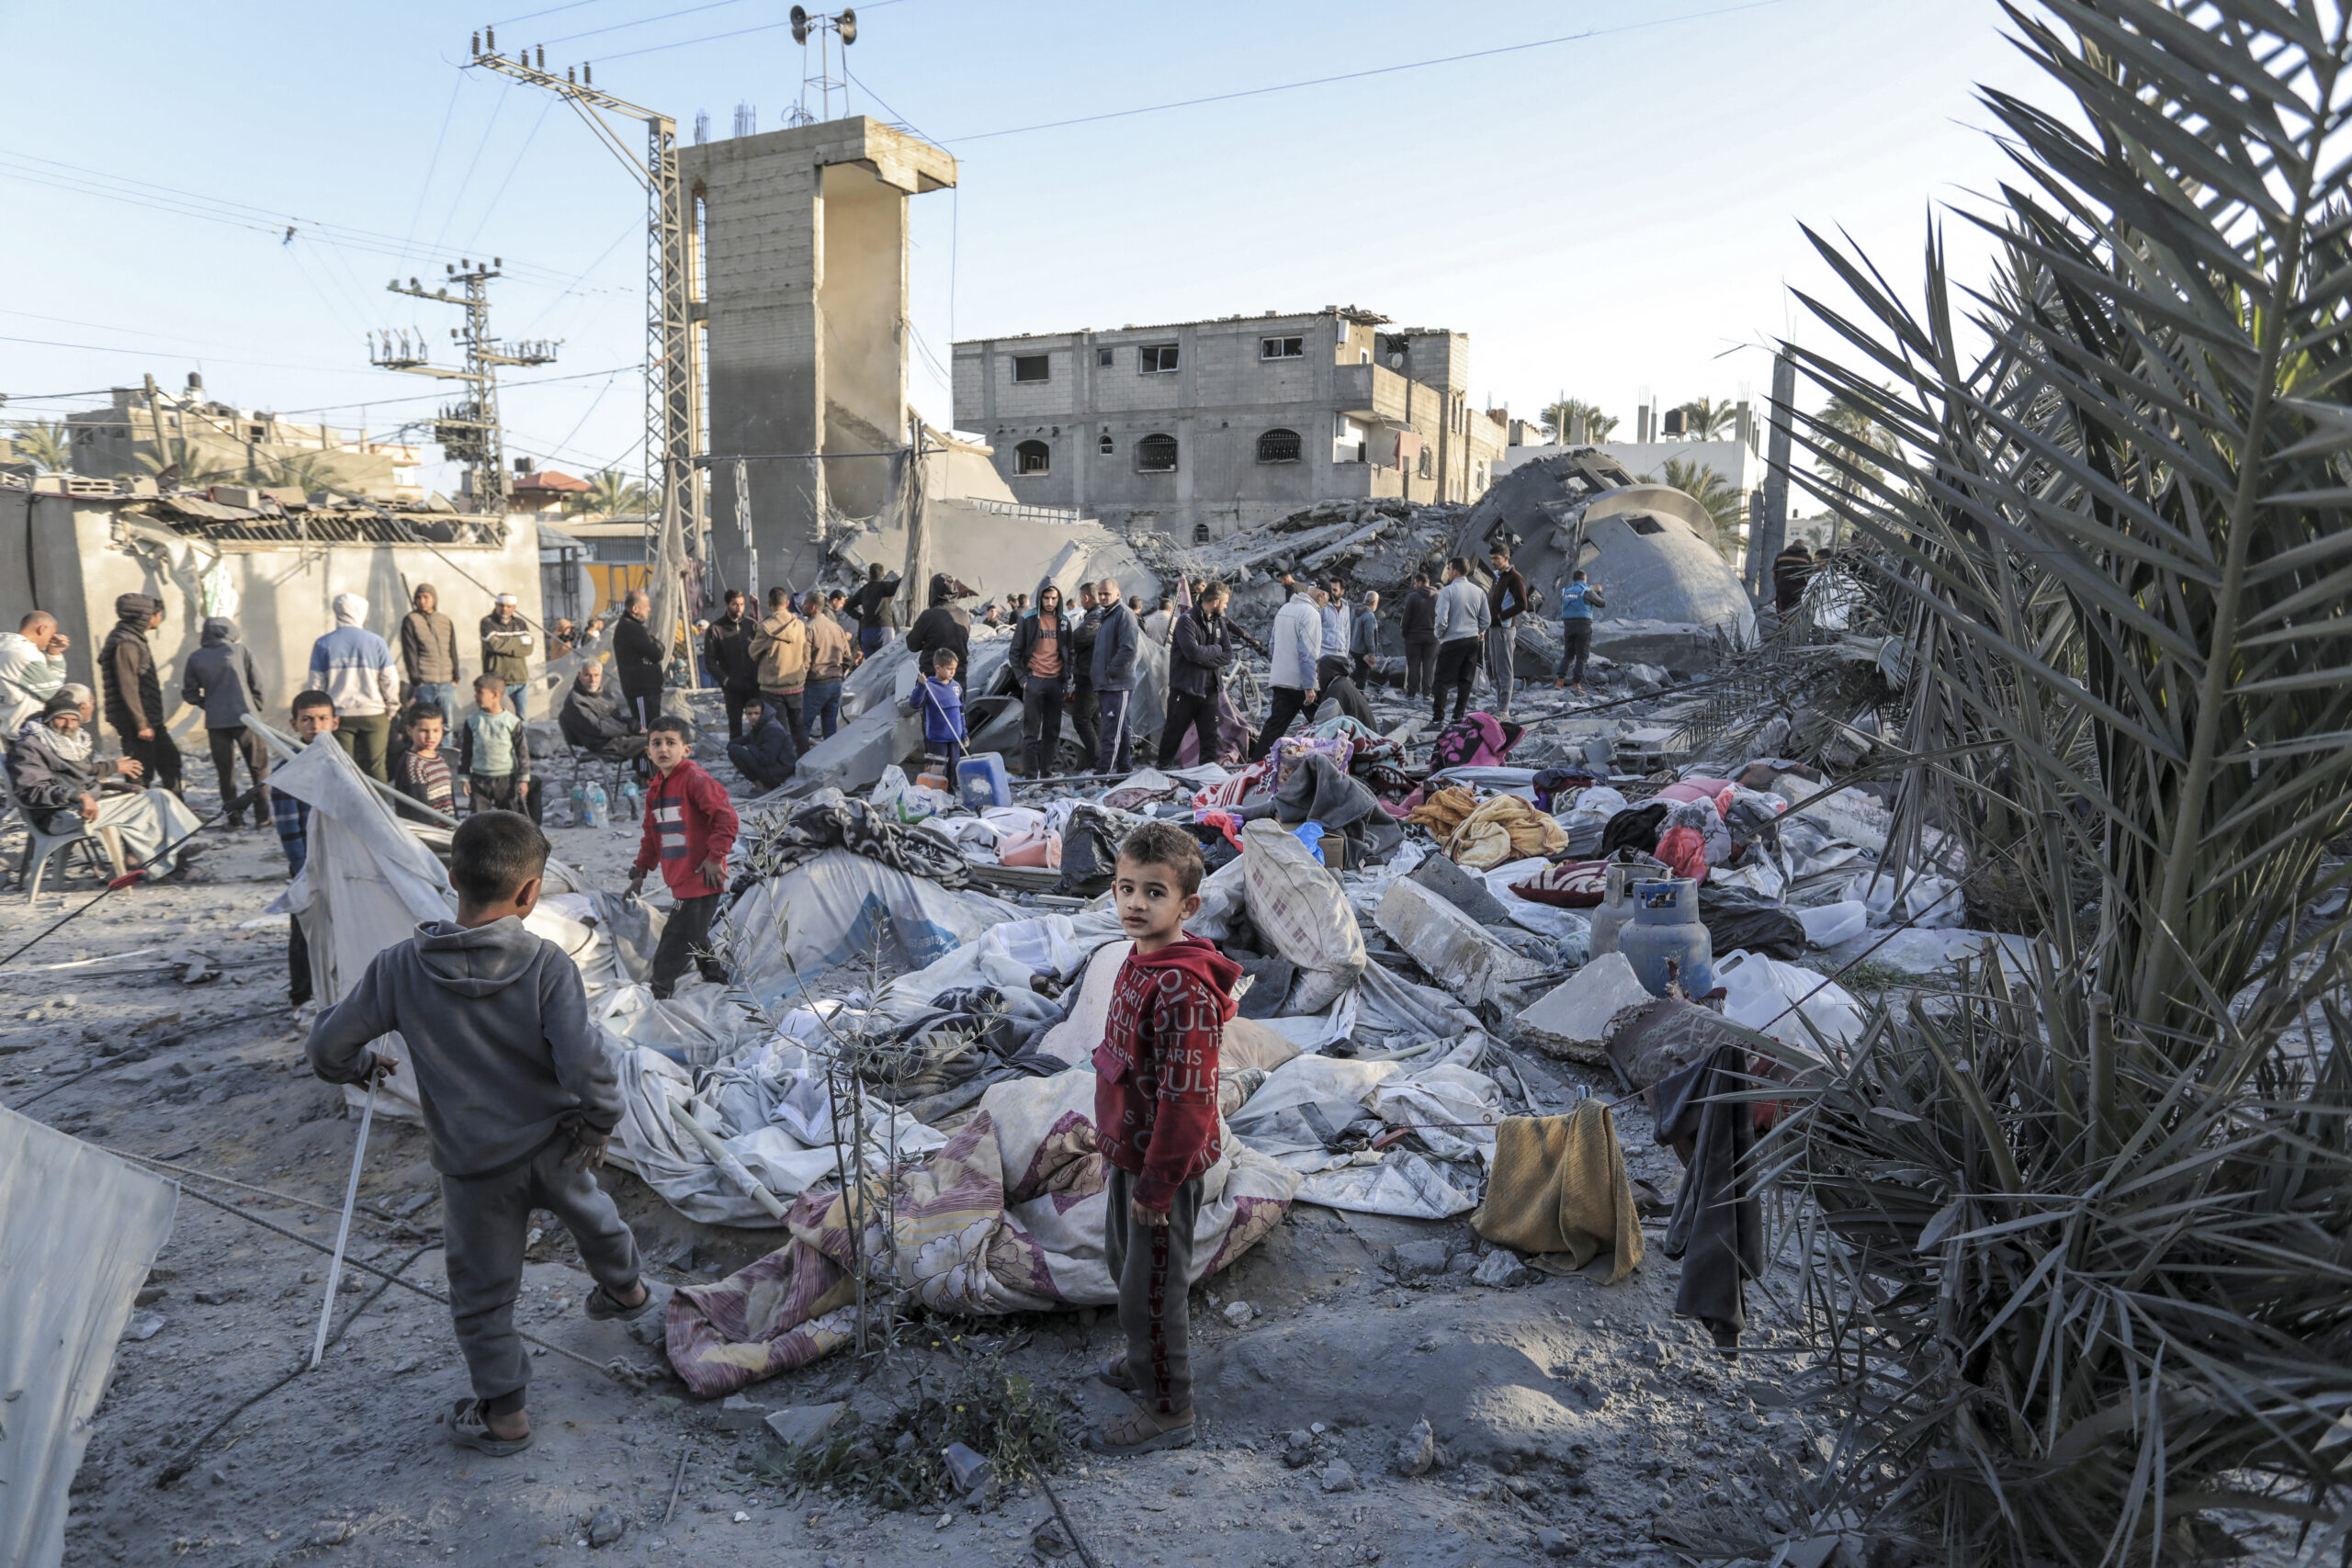 Γάζα: Ρίψεις ανθρωπιστικής βοήθειας – Αντιδράσεις για το μακελειό στη διανομή της